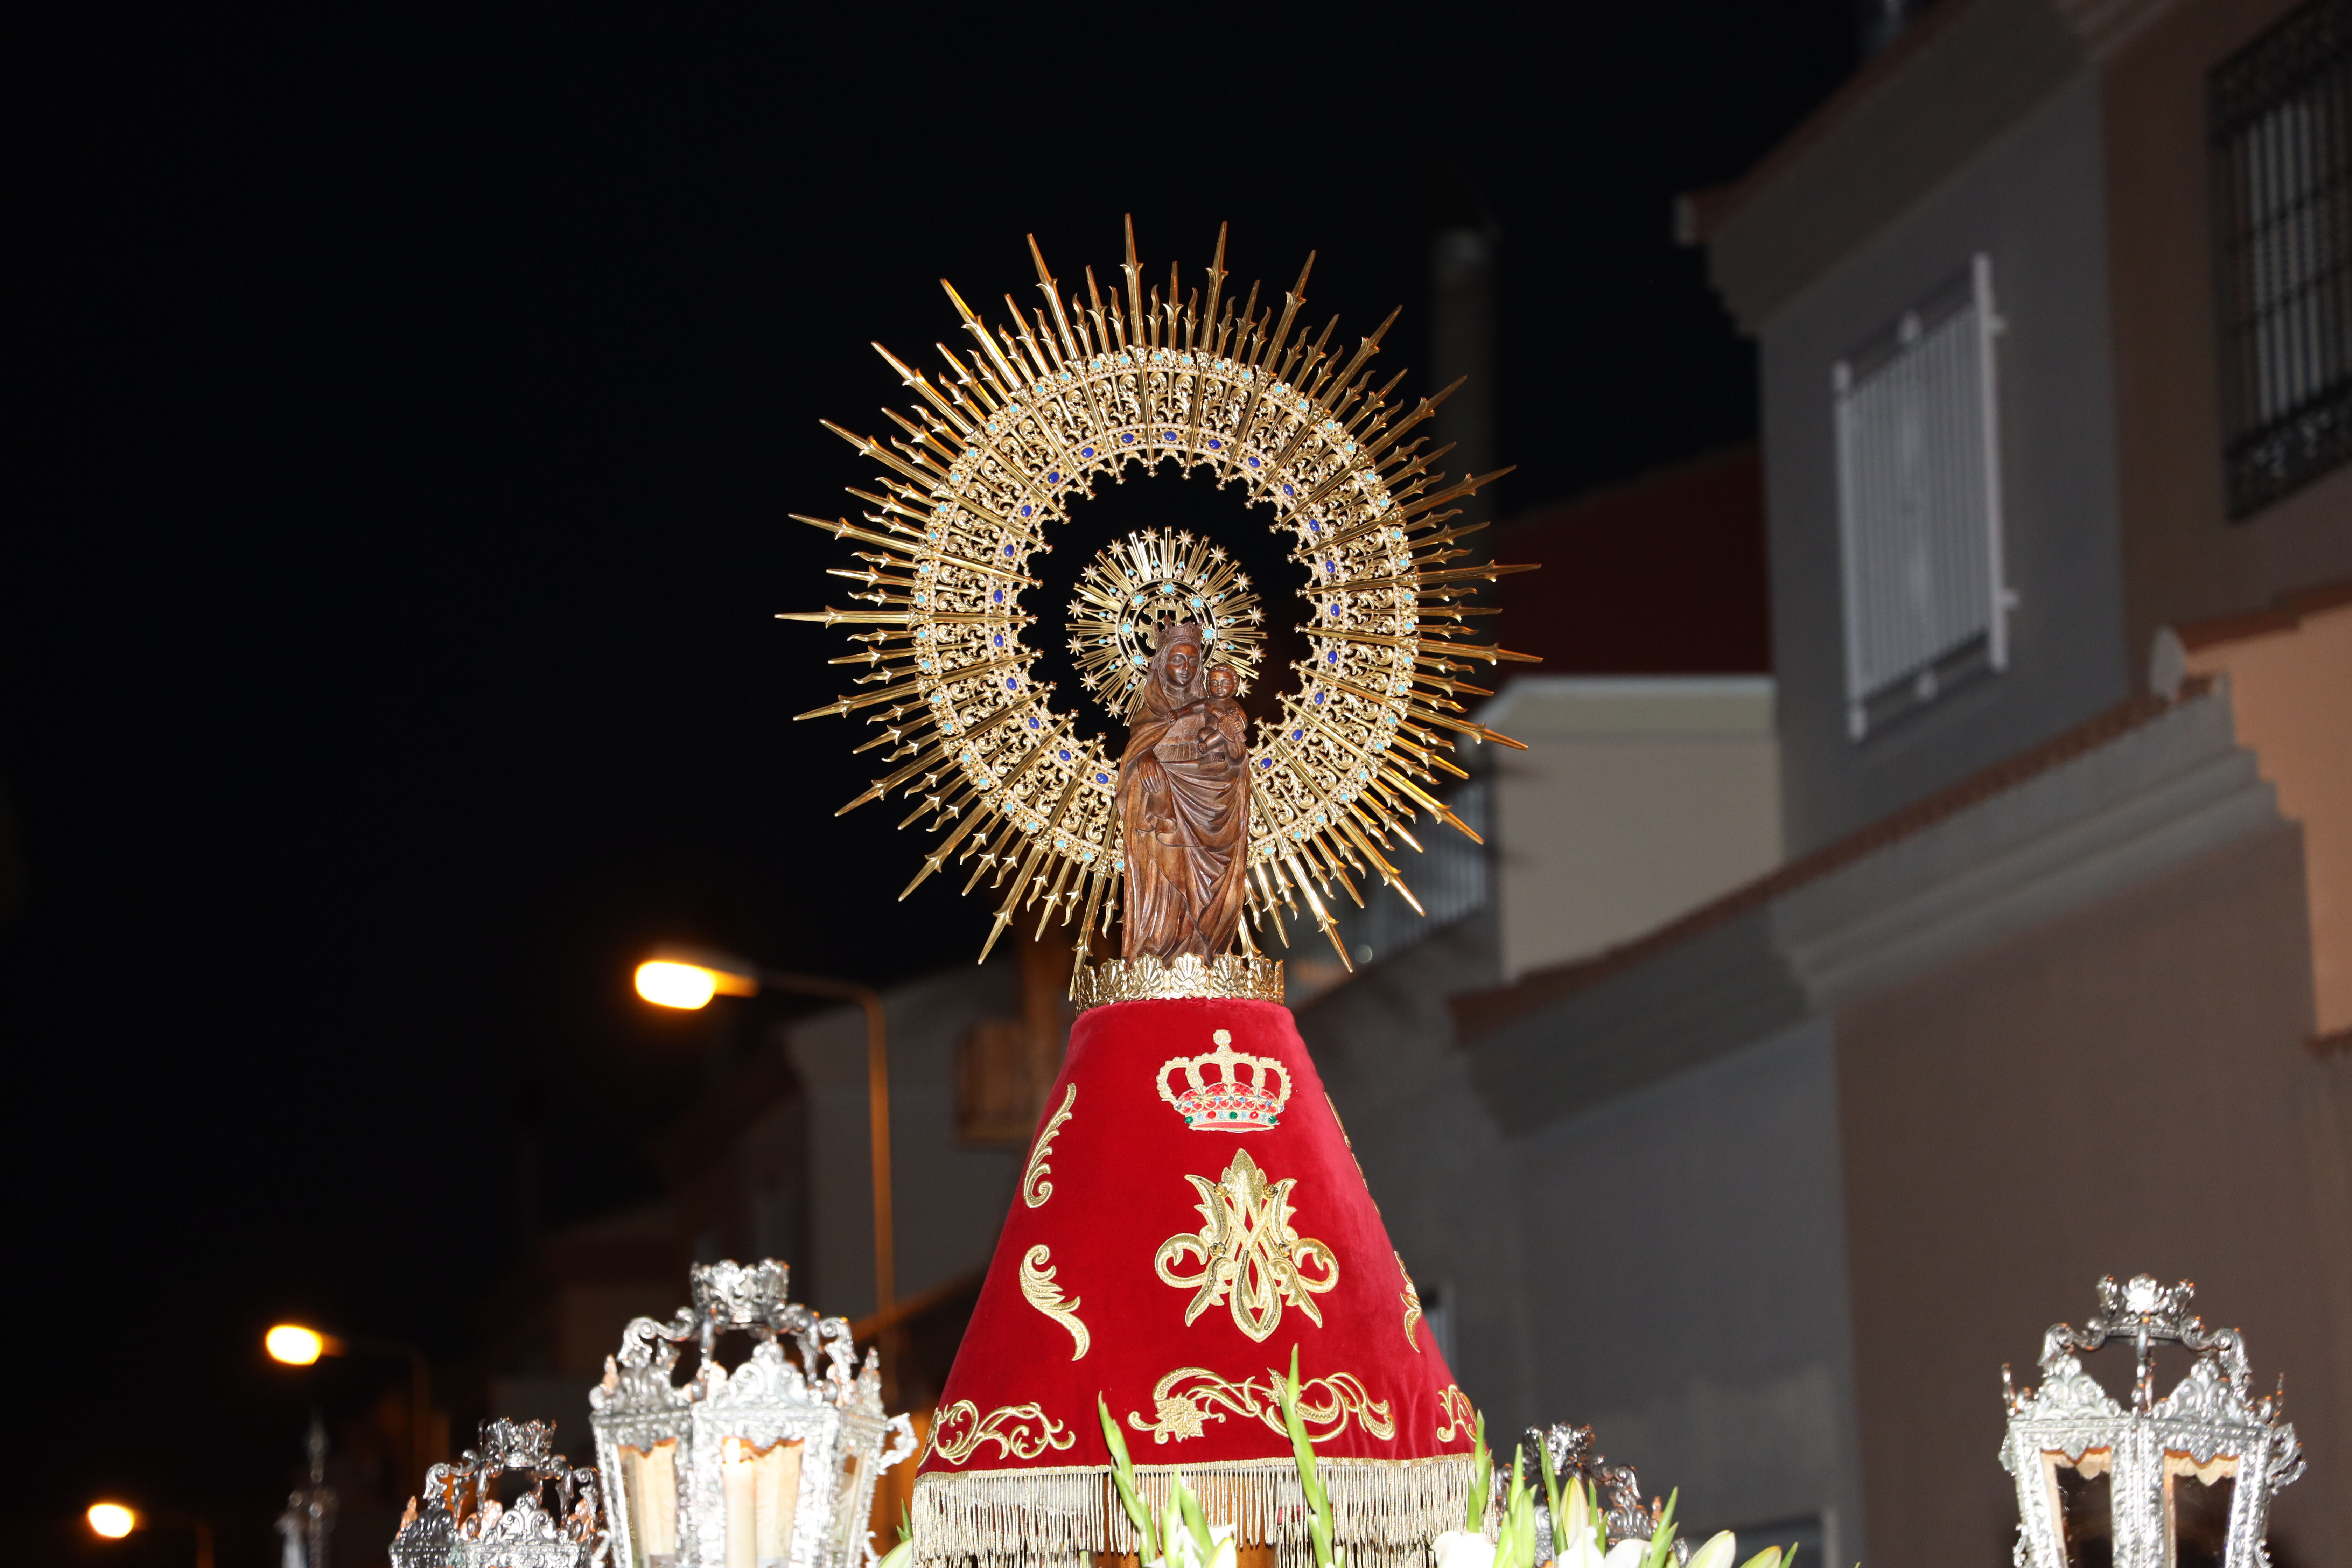 Y llegó (o no) la Virgen del Pilar, Ocio y cultura